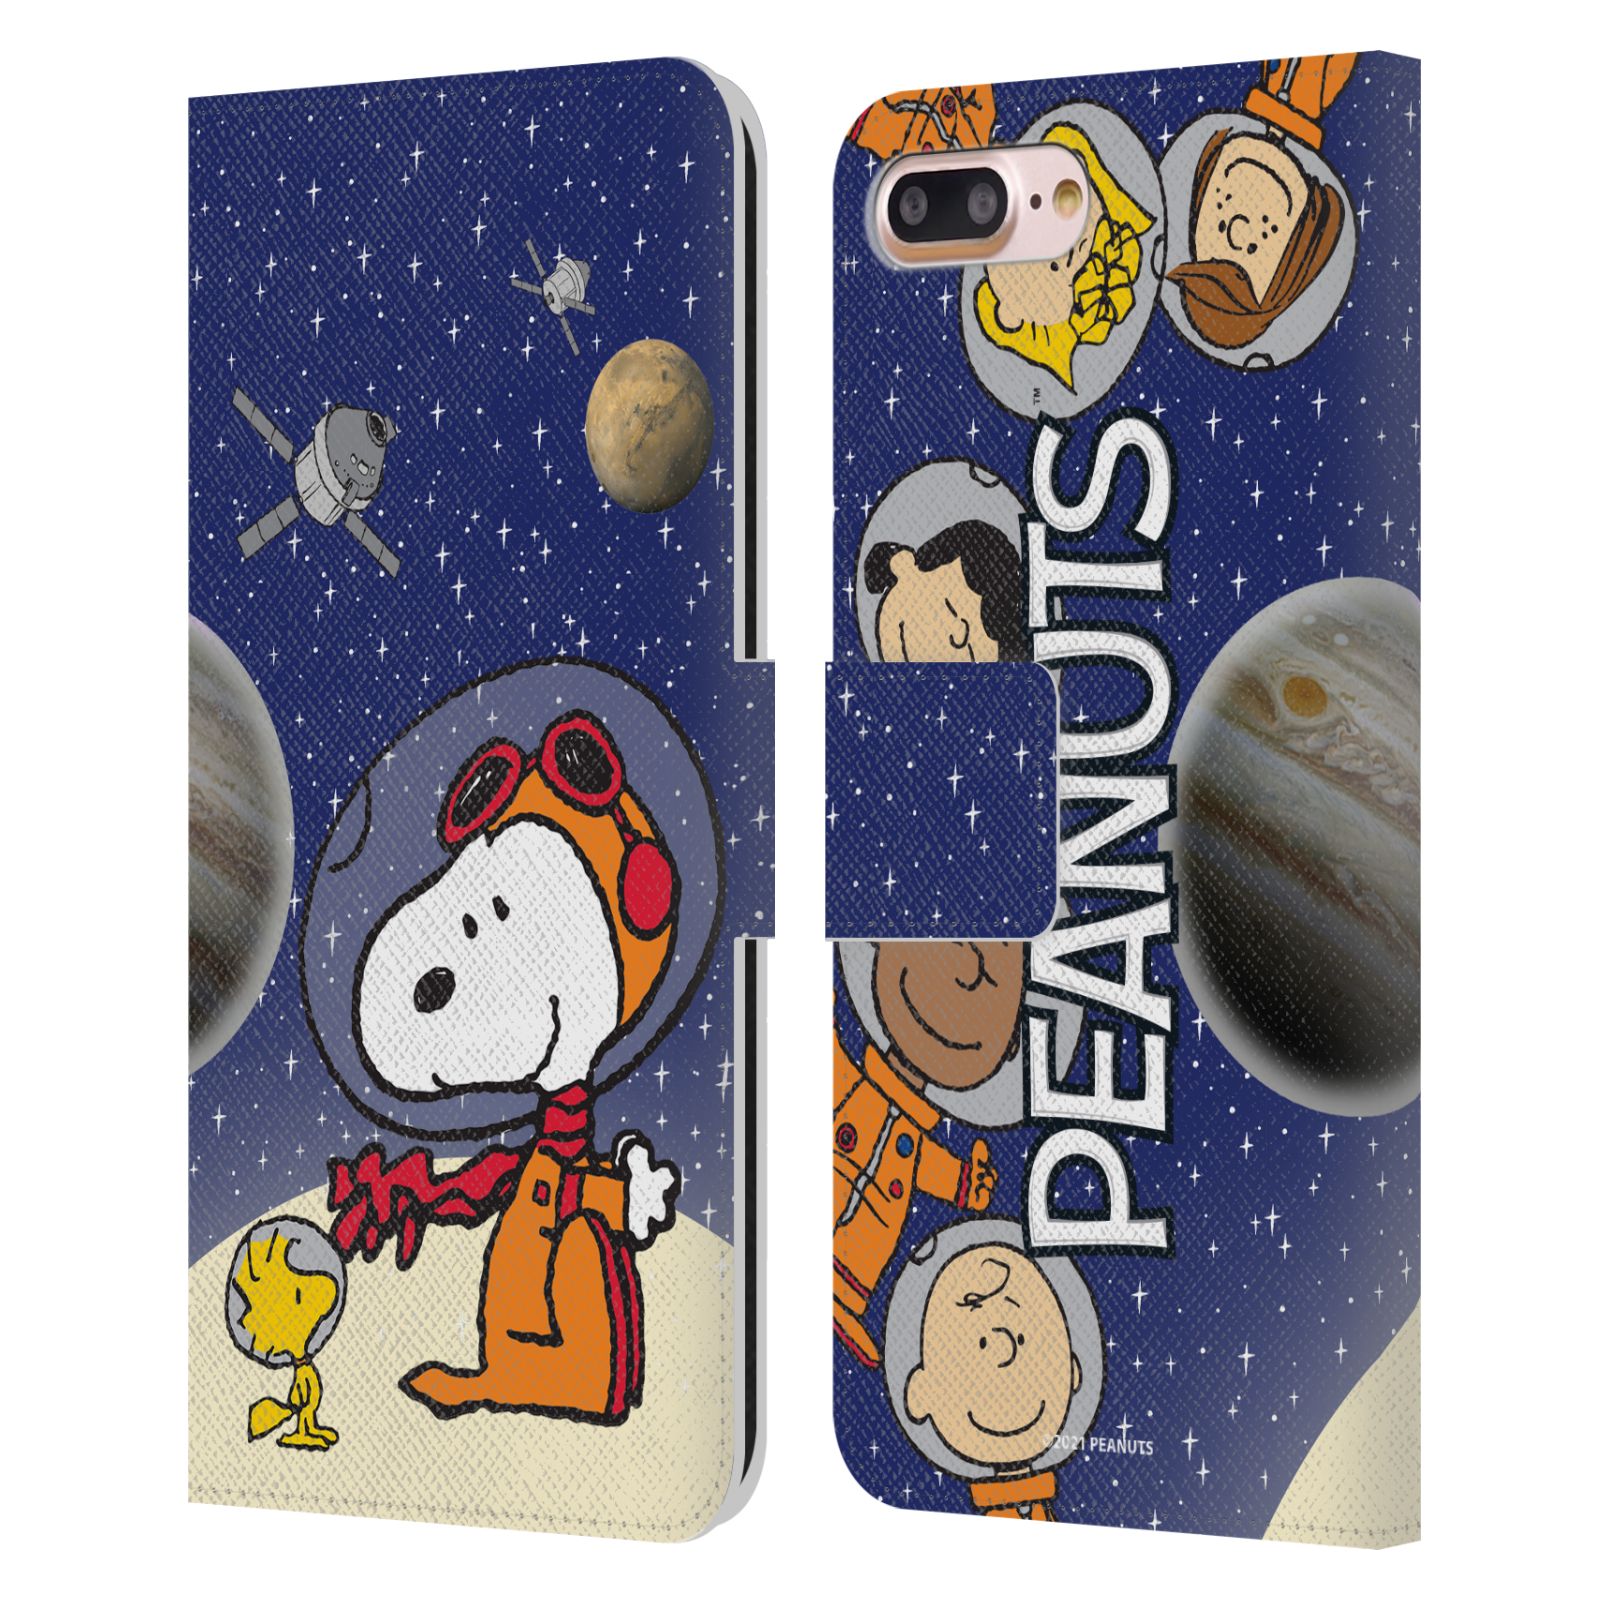 Pouzdro na mobil Apple Iphone 7+/8+ - HEAD CASE - Peanuts Snoopy ve vesmíru 2